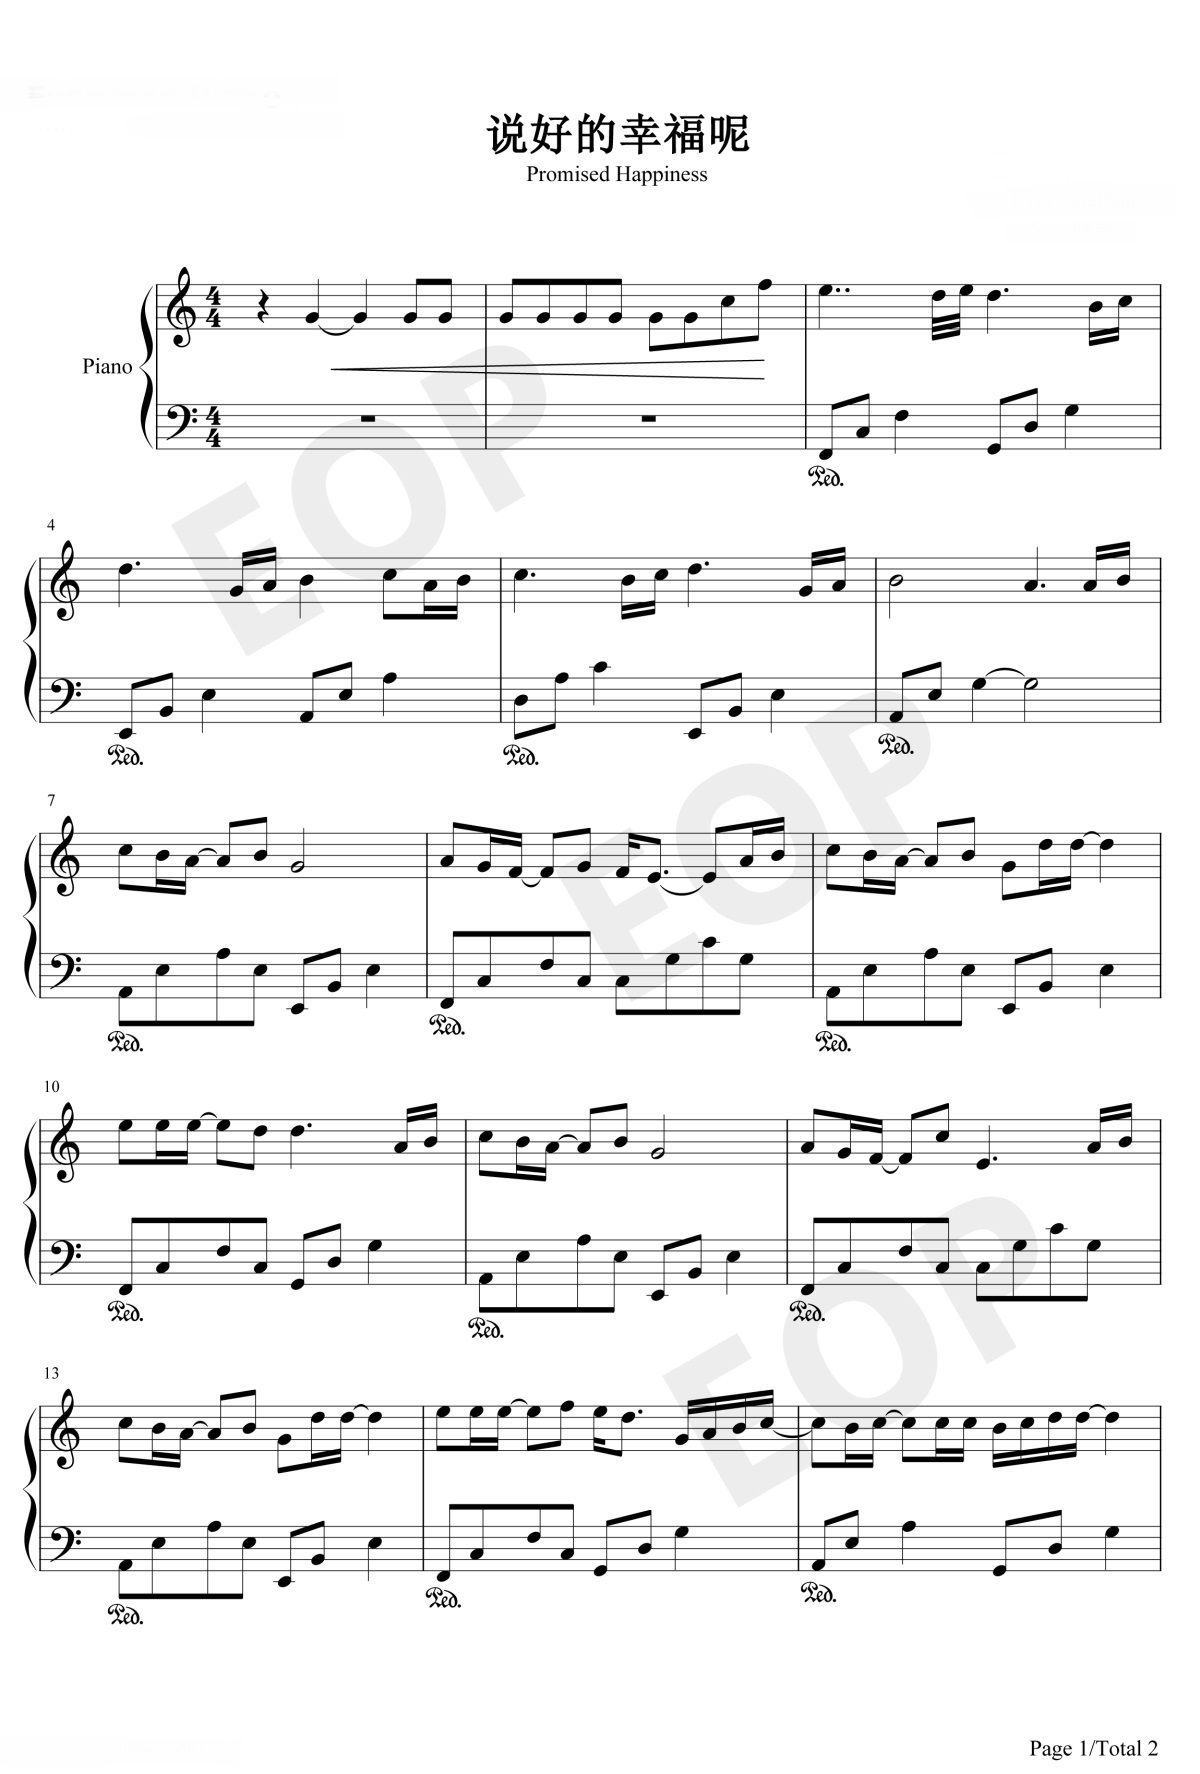 【说好的幸福呢】的钢琴谱简谱 - 周杰伦